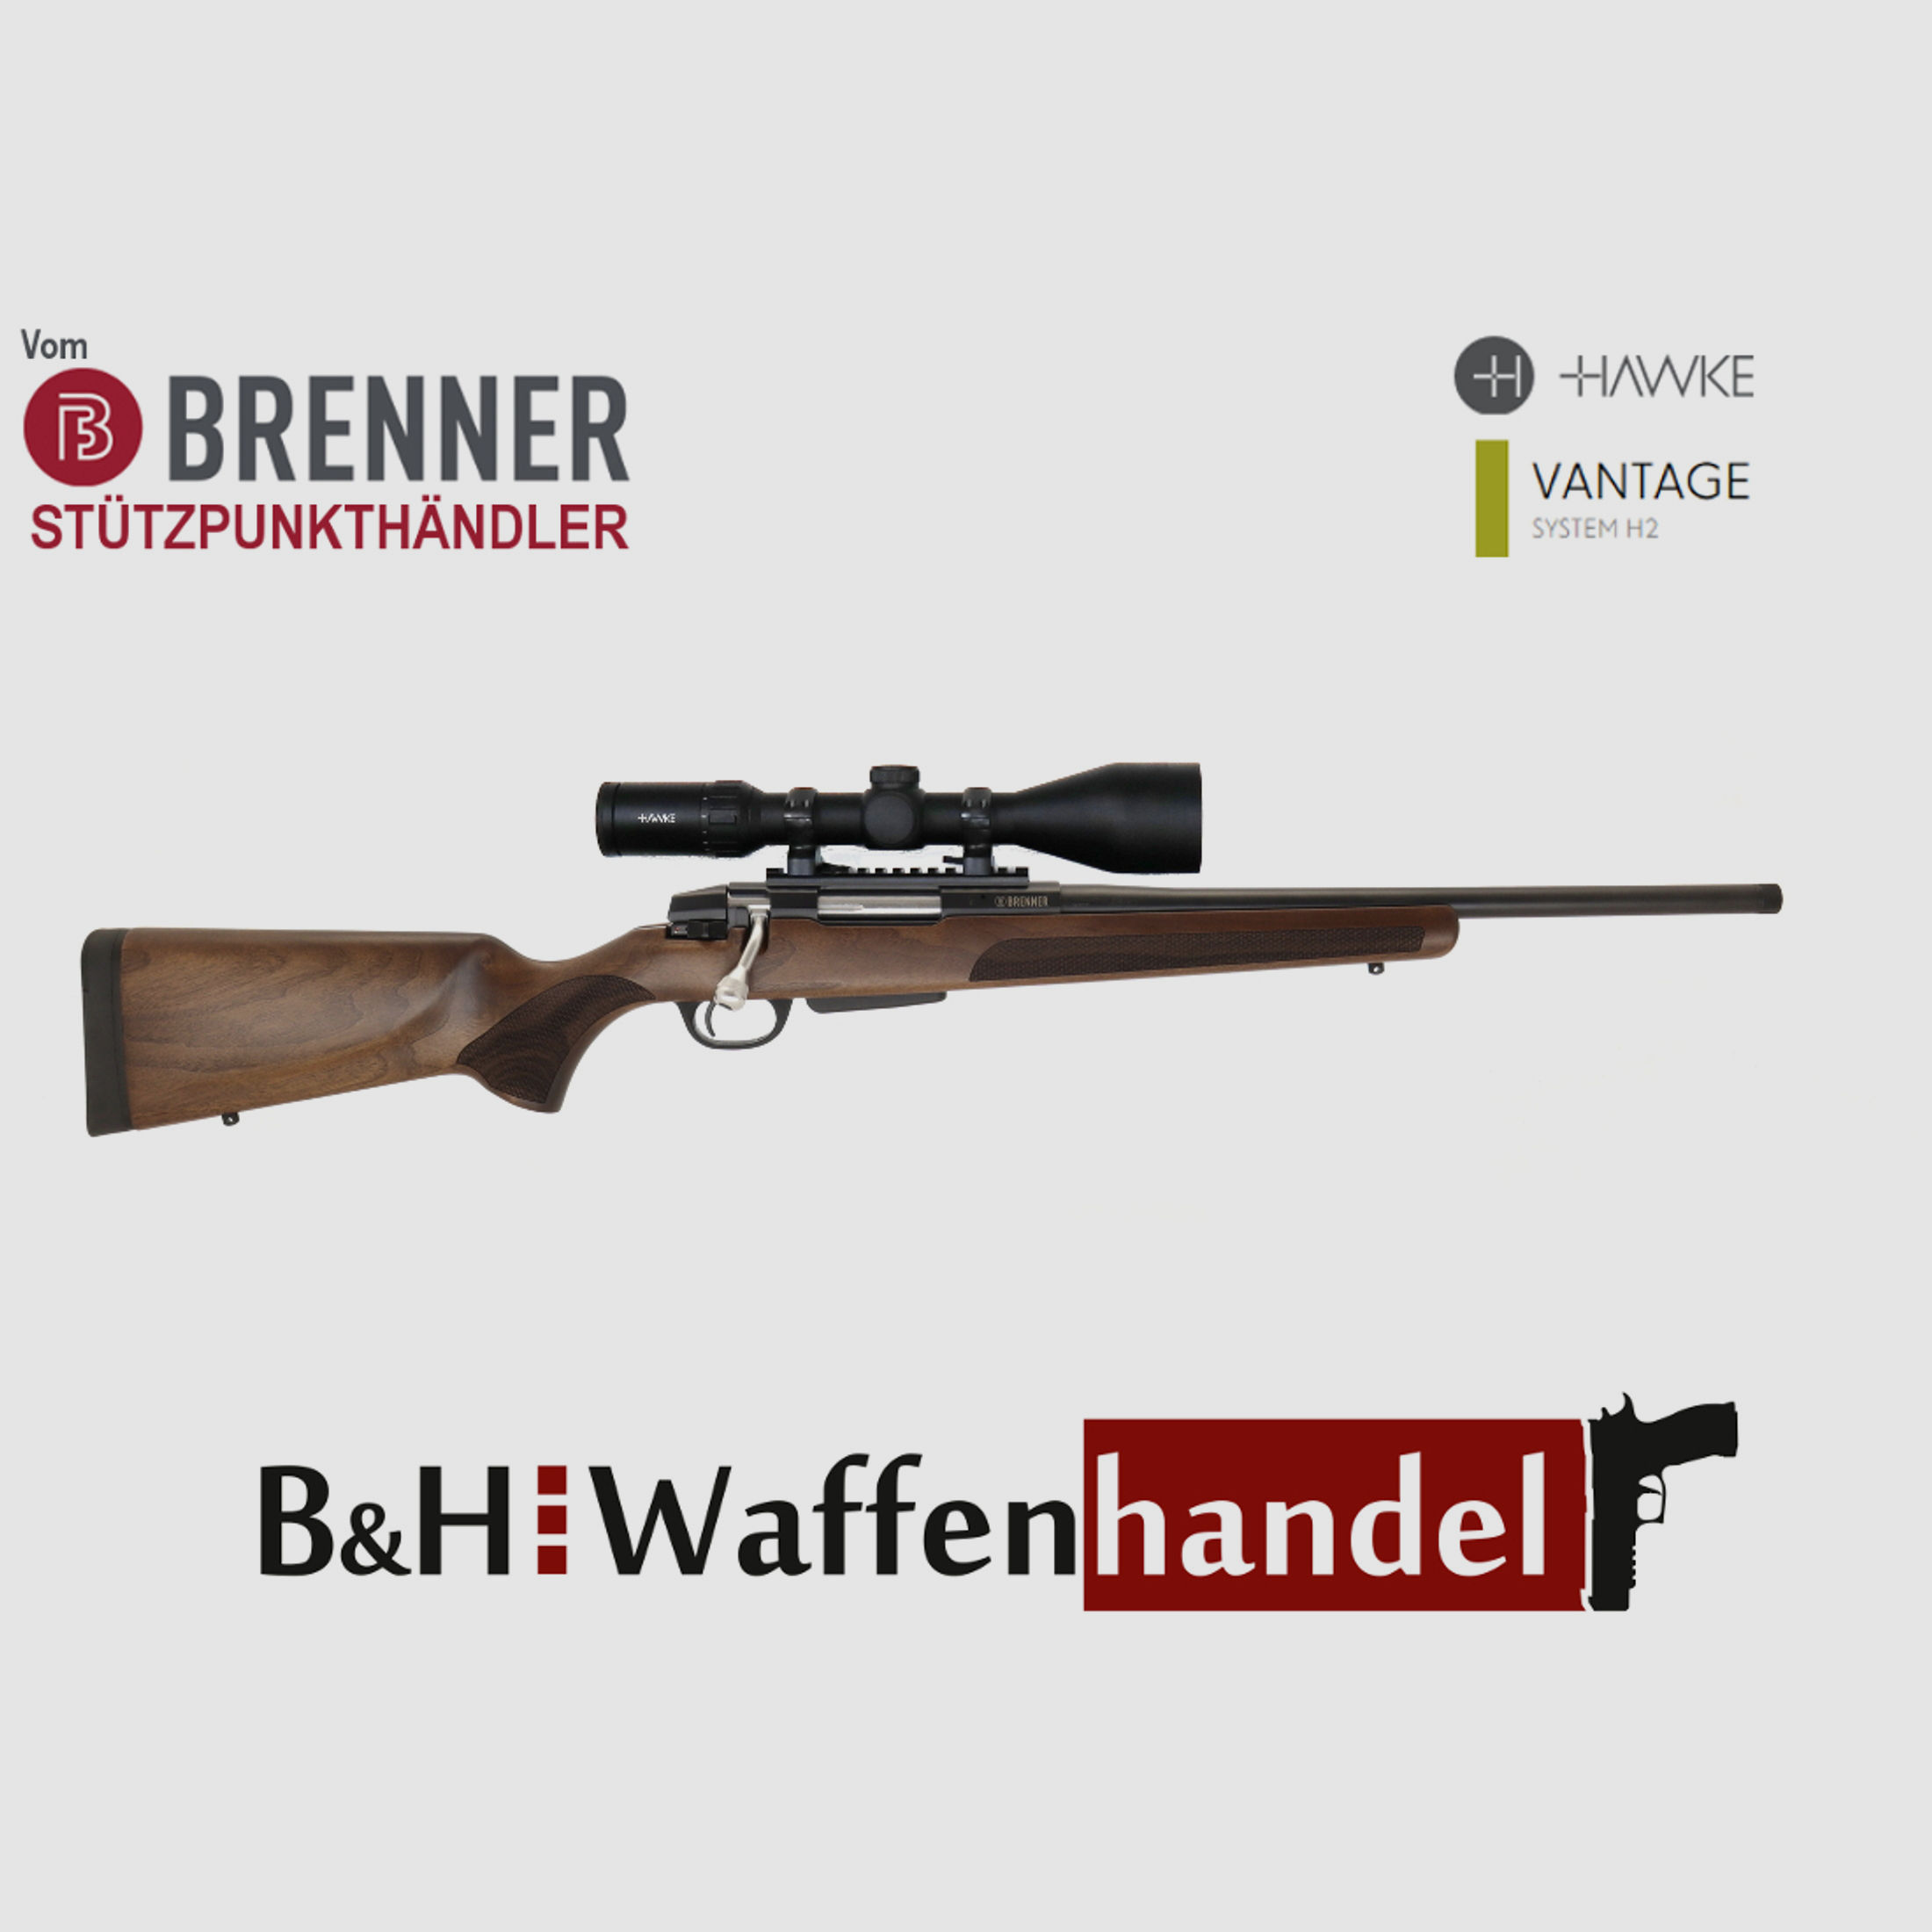 Auf Lager: Repetierer Brenner BR 20 Holzschaft mit Hawke Vantage 3-12x56 Jagd (Best.Nr.: BR20WP6) Finanzierung möglich